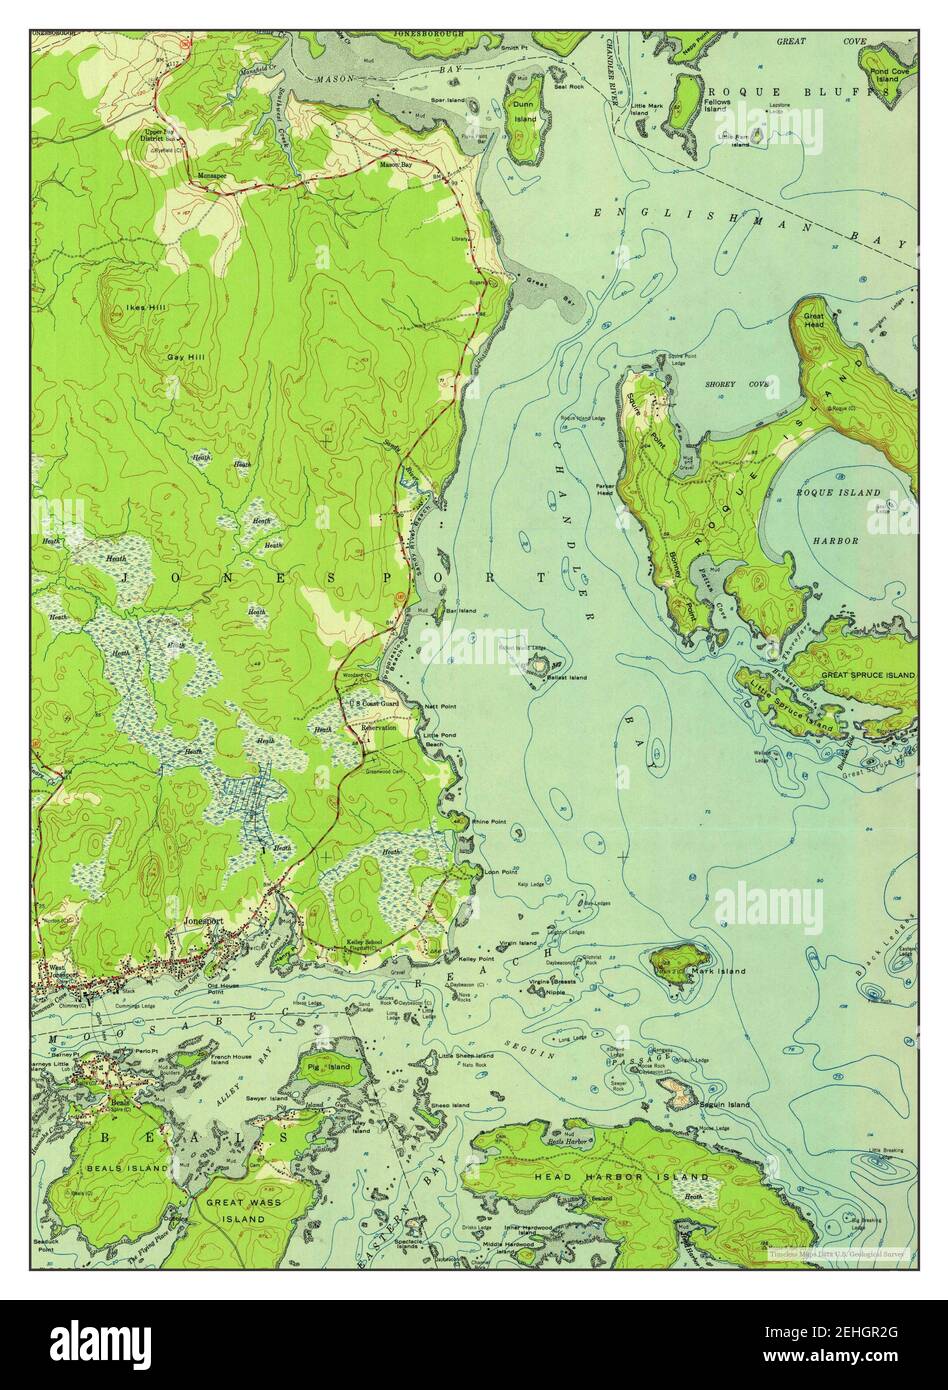 Jonesport Maine Map 